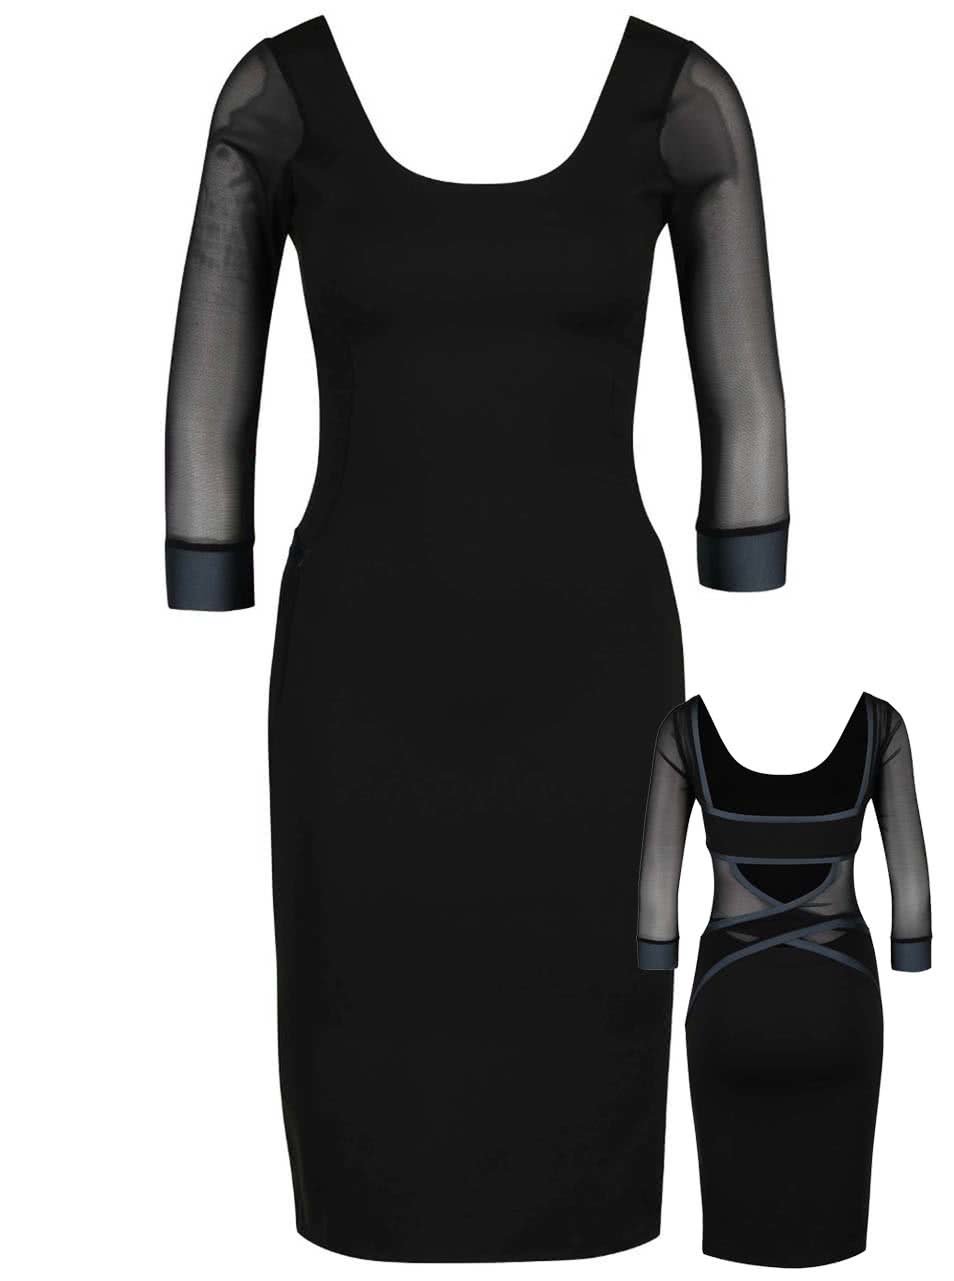 Šedo-černé elastické šaty s ozdobnými pásy přes záda Quontum